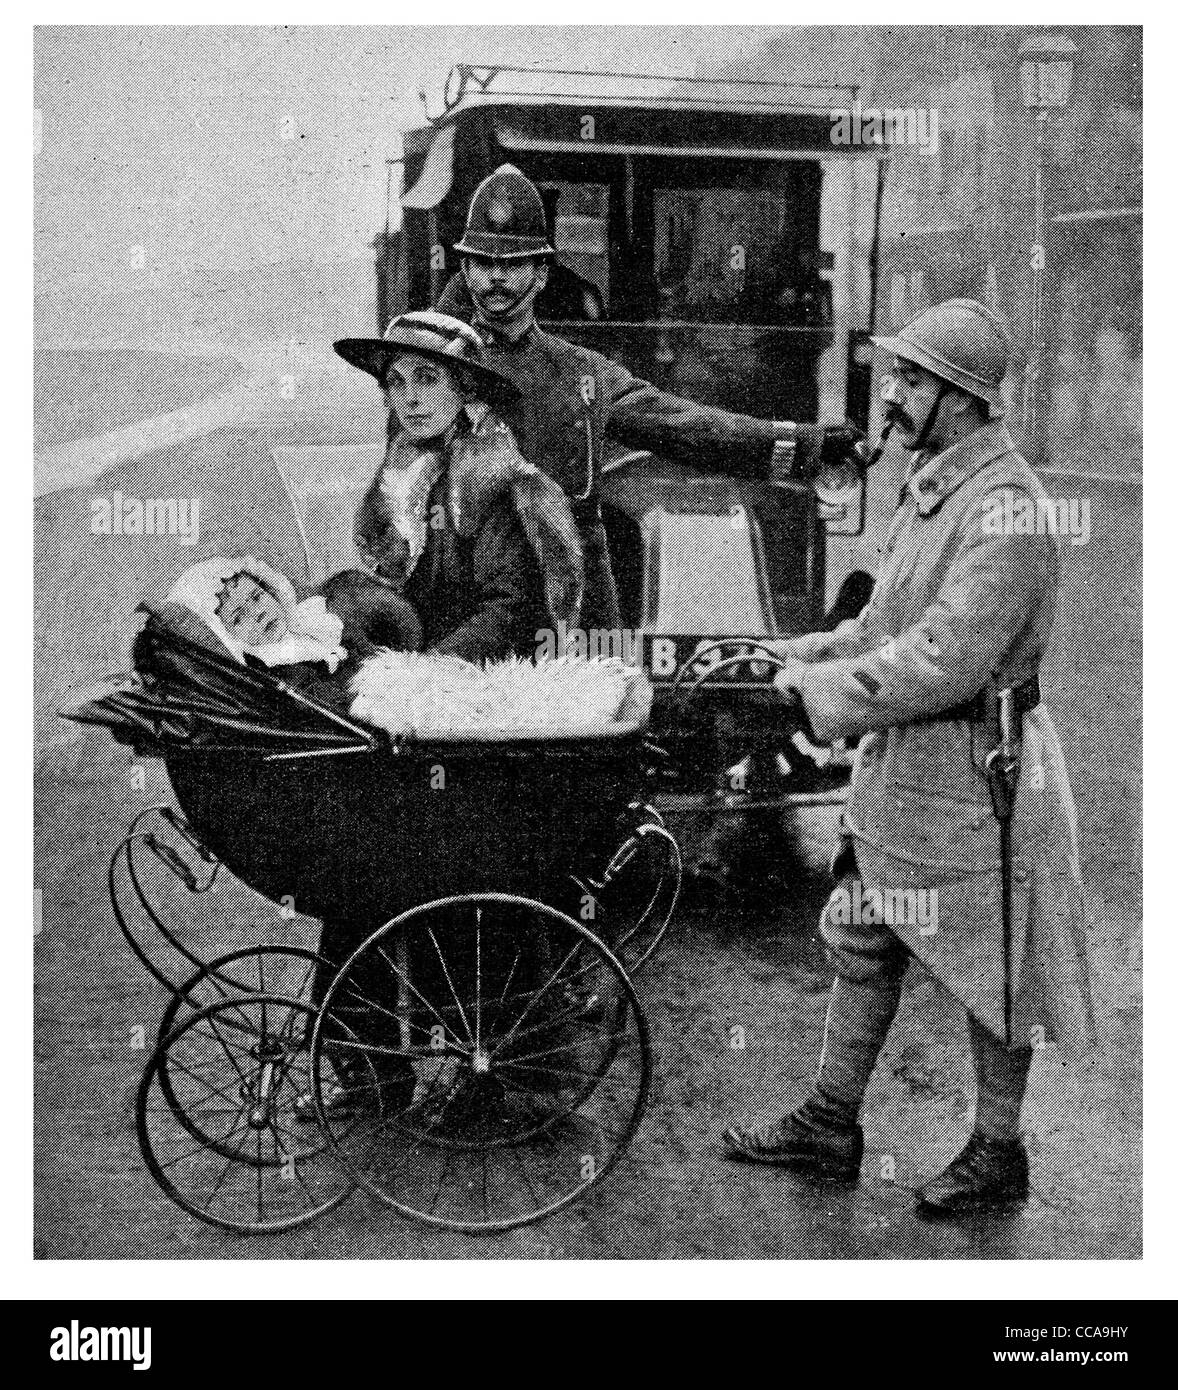 Seine Majestät König Baby Französisch Royal bewaffnet Guard Bobby Polizist 1916 London Straße Auto Kinderwagen Kleinkind Kindermädchen Diener Majestät Stockfoto